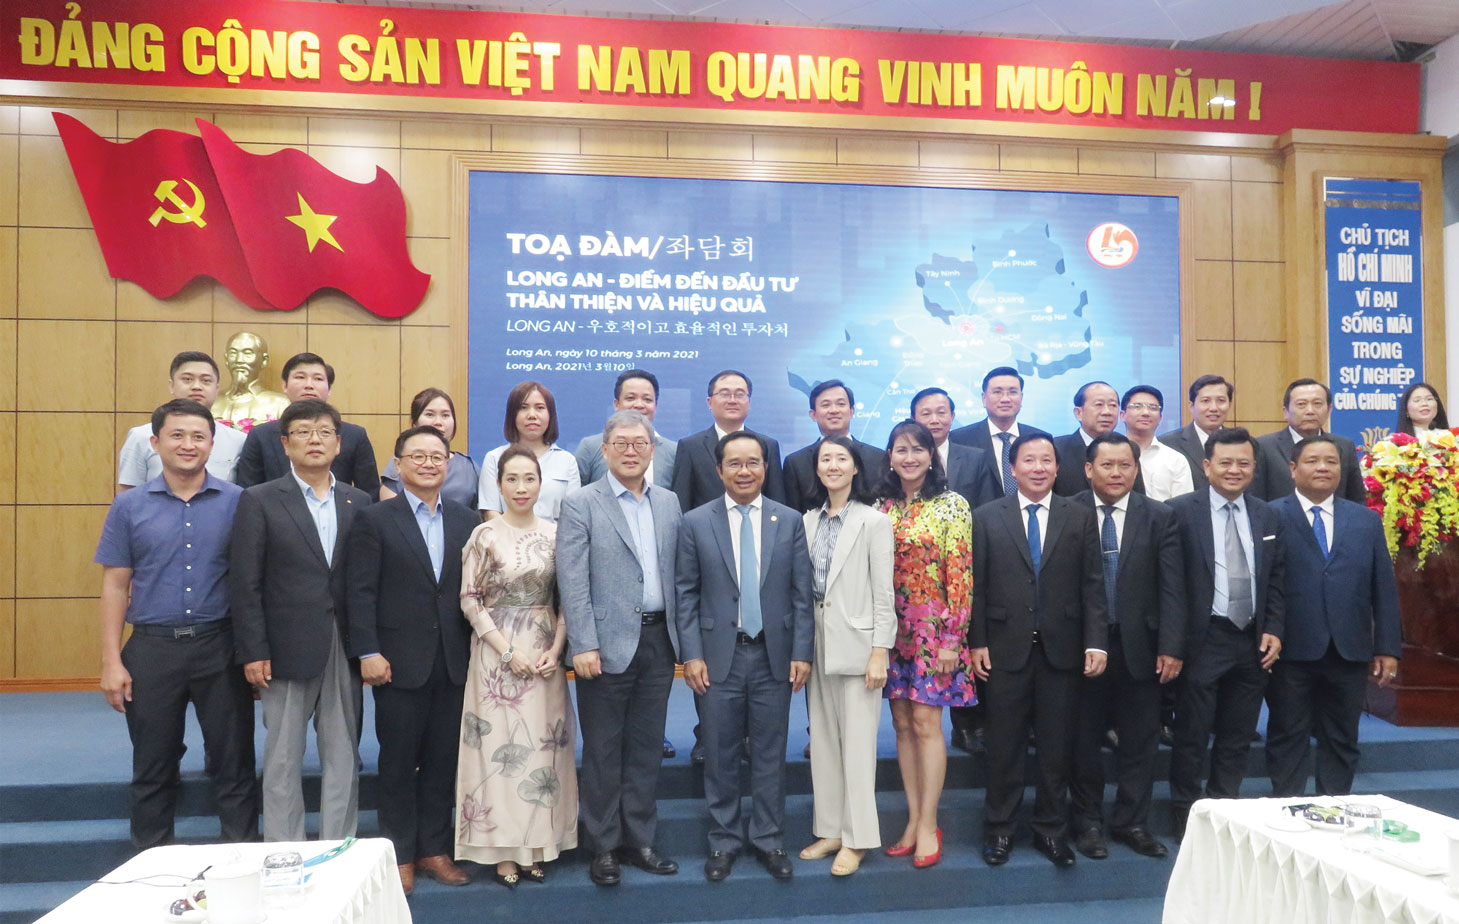 Lãnh đạo tỉnh chụp ảnh lưu niệm với lãnh đạo Saigontel, doanh nghiệp Hàn Quốc trong buổi tọa đàm: Long An - Điểm đến đầu tư thân thiện và hiệu quả. (Ảnh tư liệu)